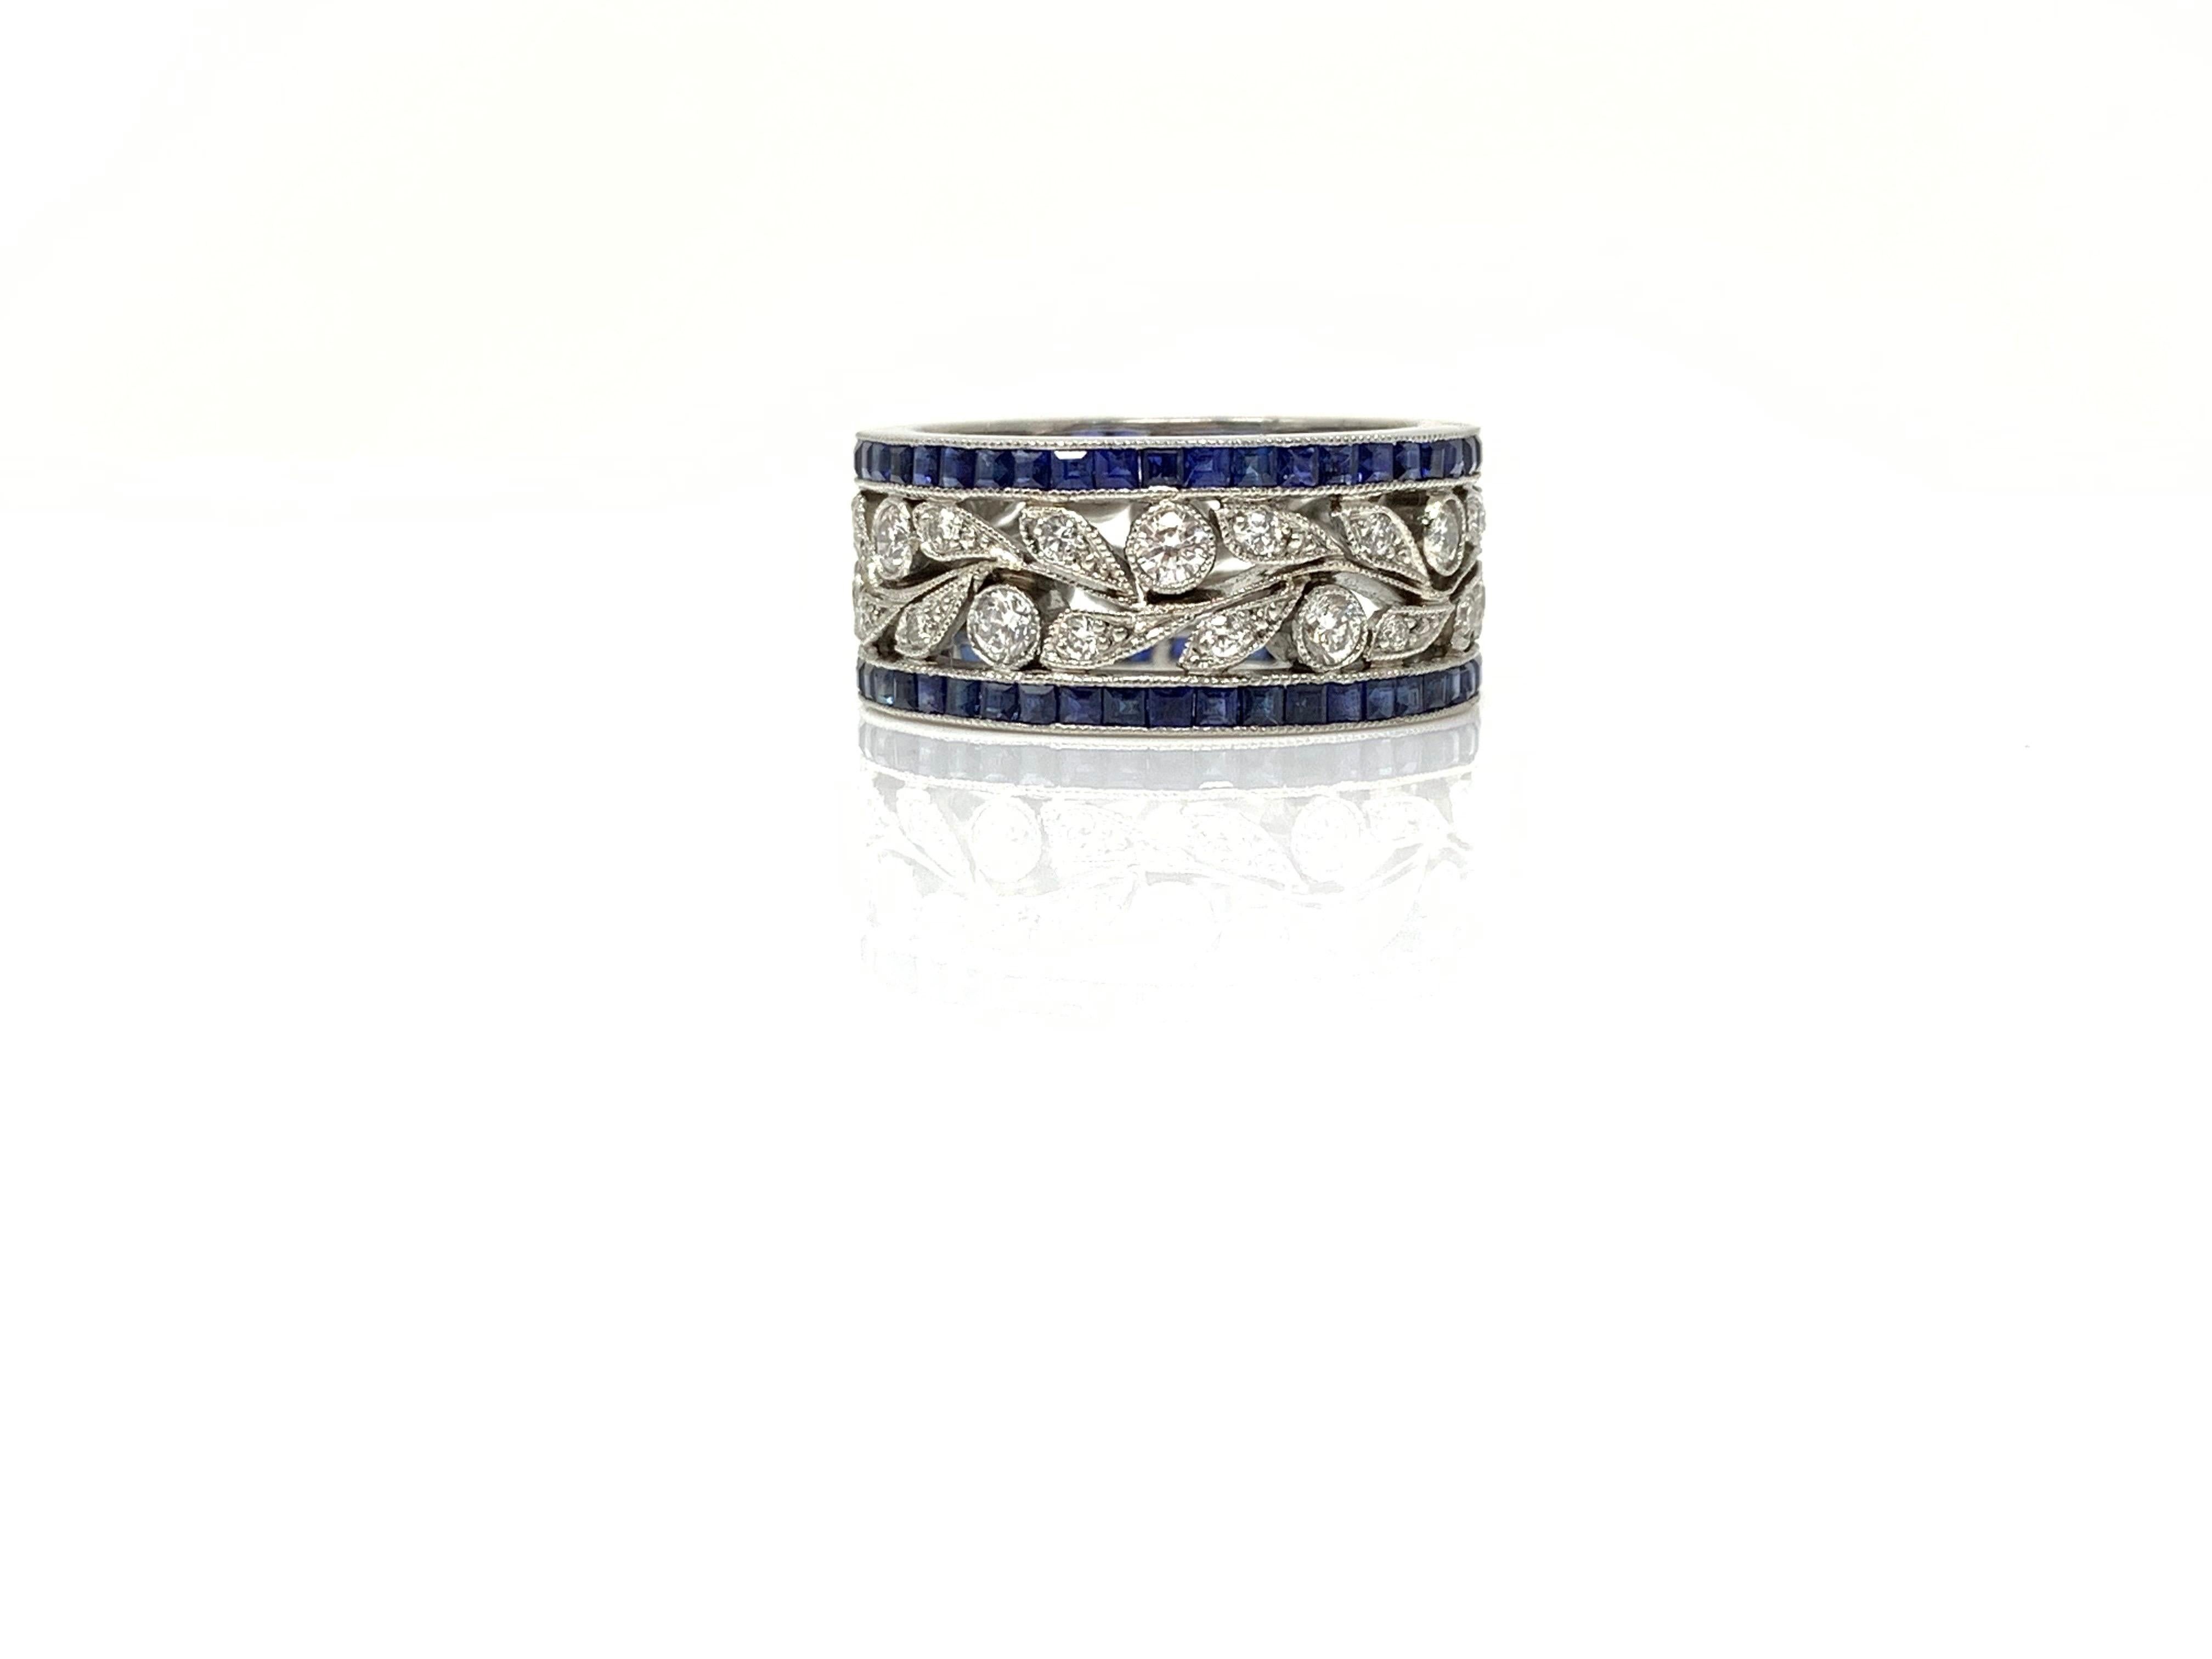 Une alliance vraiment magnifique de Moguldiam Inc. Cette magnifique alliance est fabriquée à la main en platine et présente un saphir bleu et un diamant blanc rond et brillant. 
Saphir bleu poids carat : 1.50 carat 
Poids du diamant blanc : 0,85